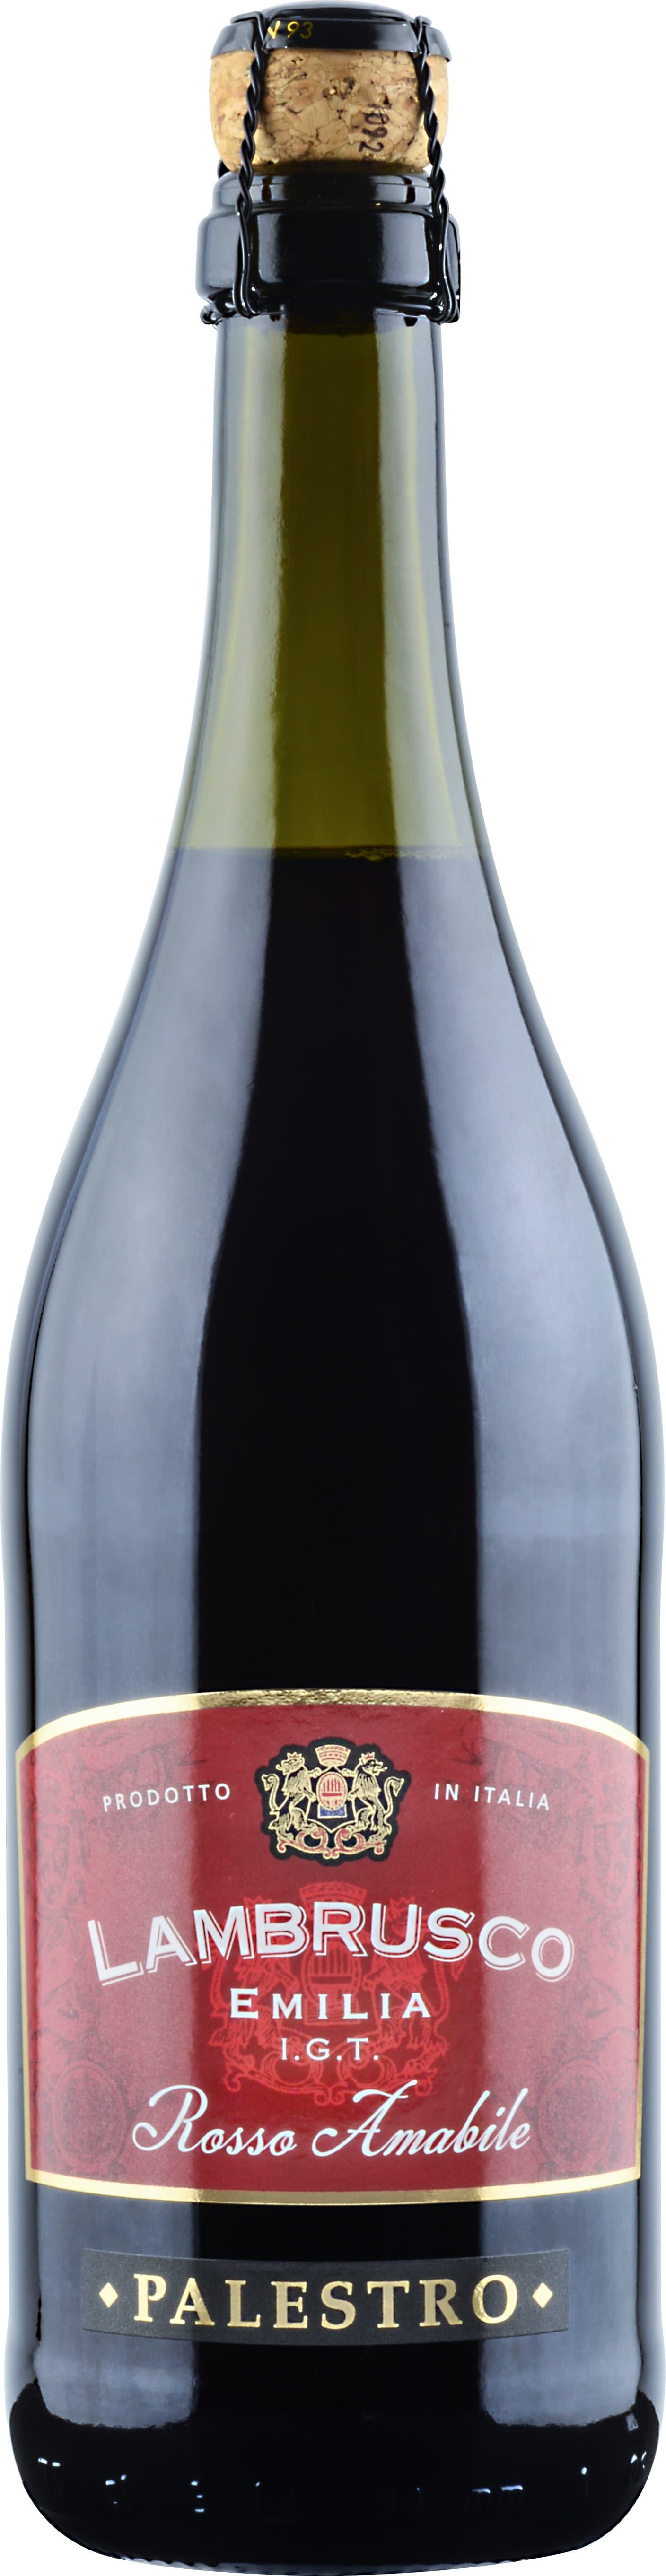 Вино игристое Палестро Ламбруско Эмилия Россо красное п/сладкое, Италия 750 мл., стекло